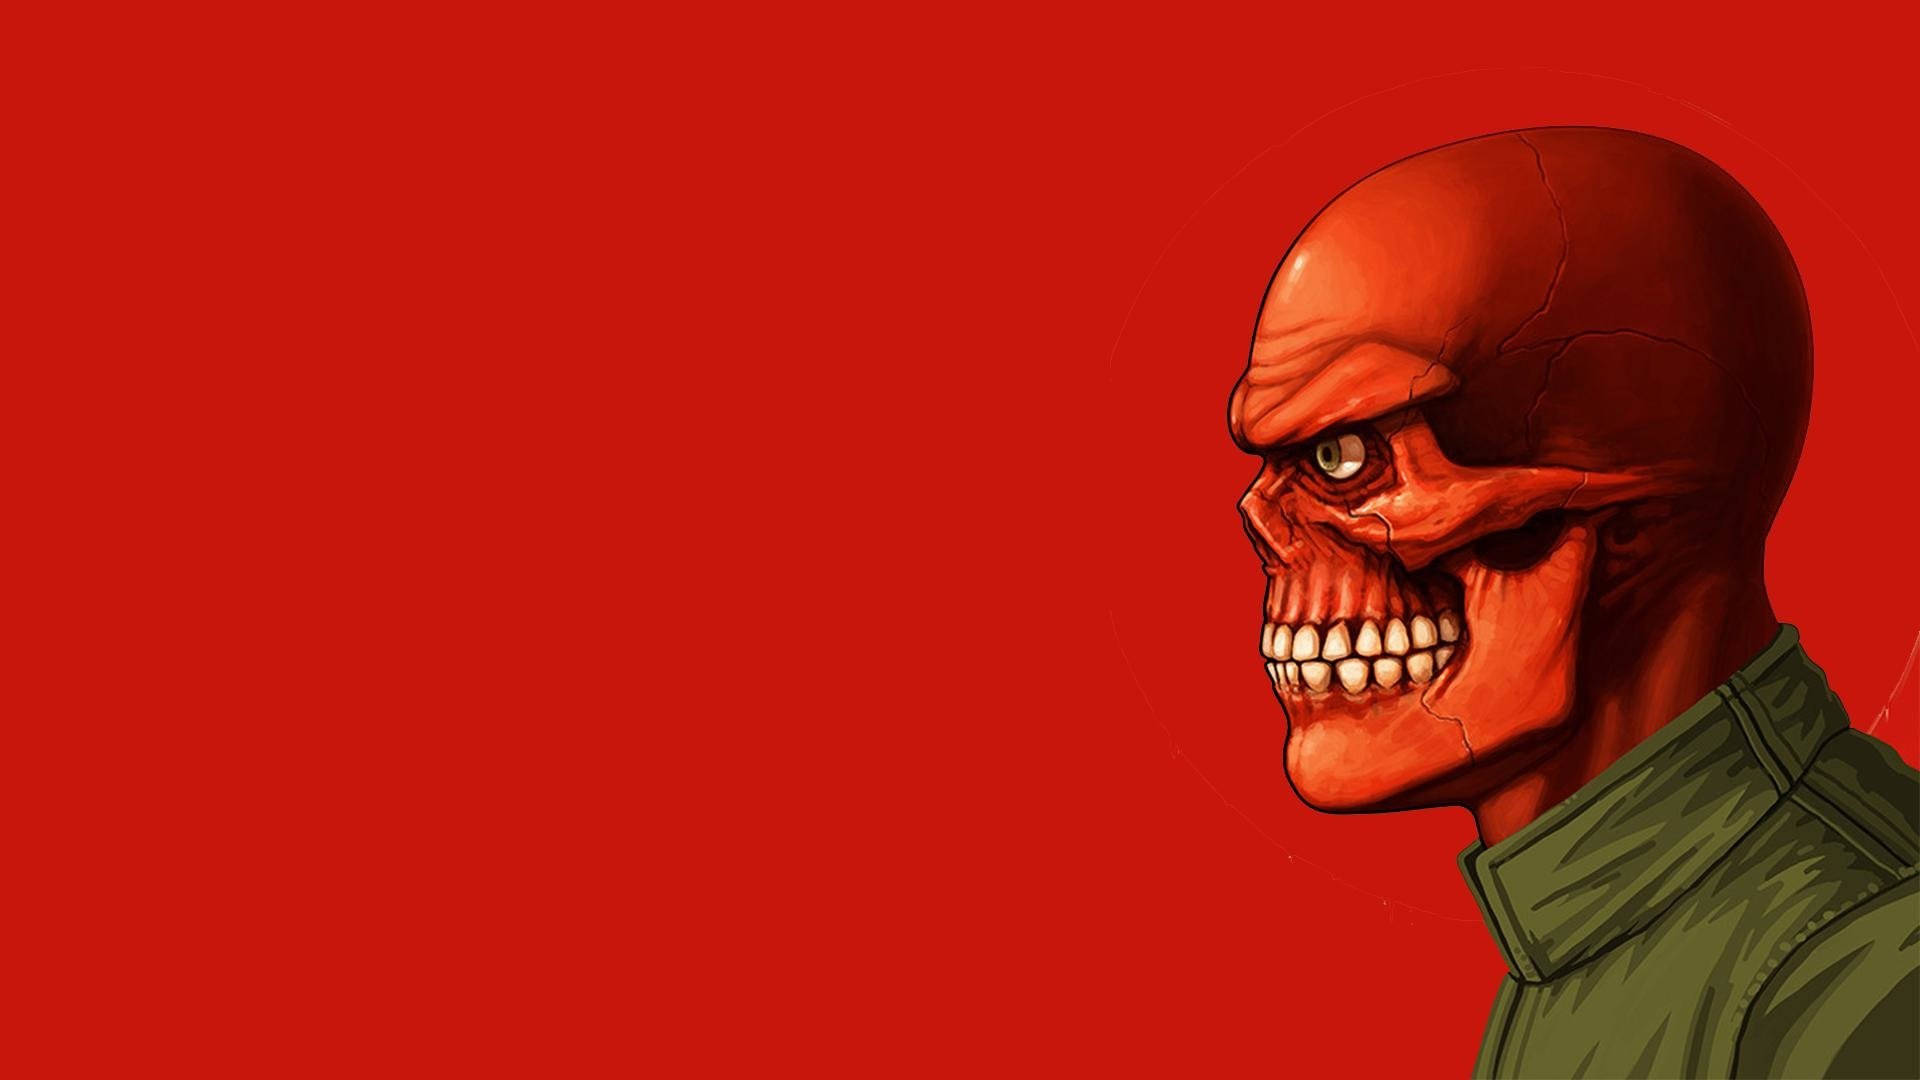 Red Skull Digital Art Background